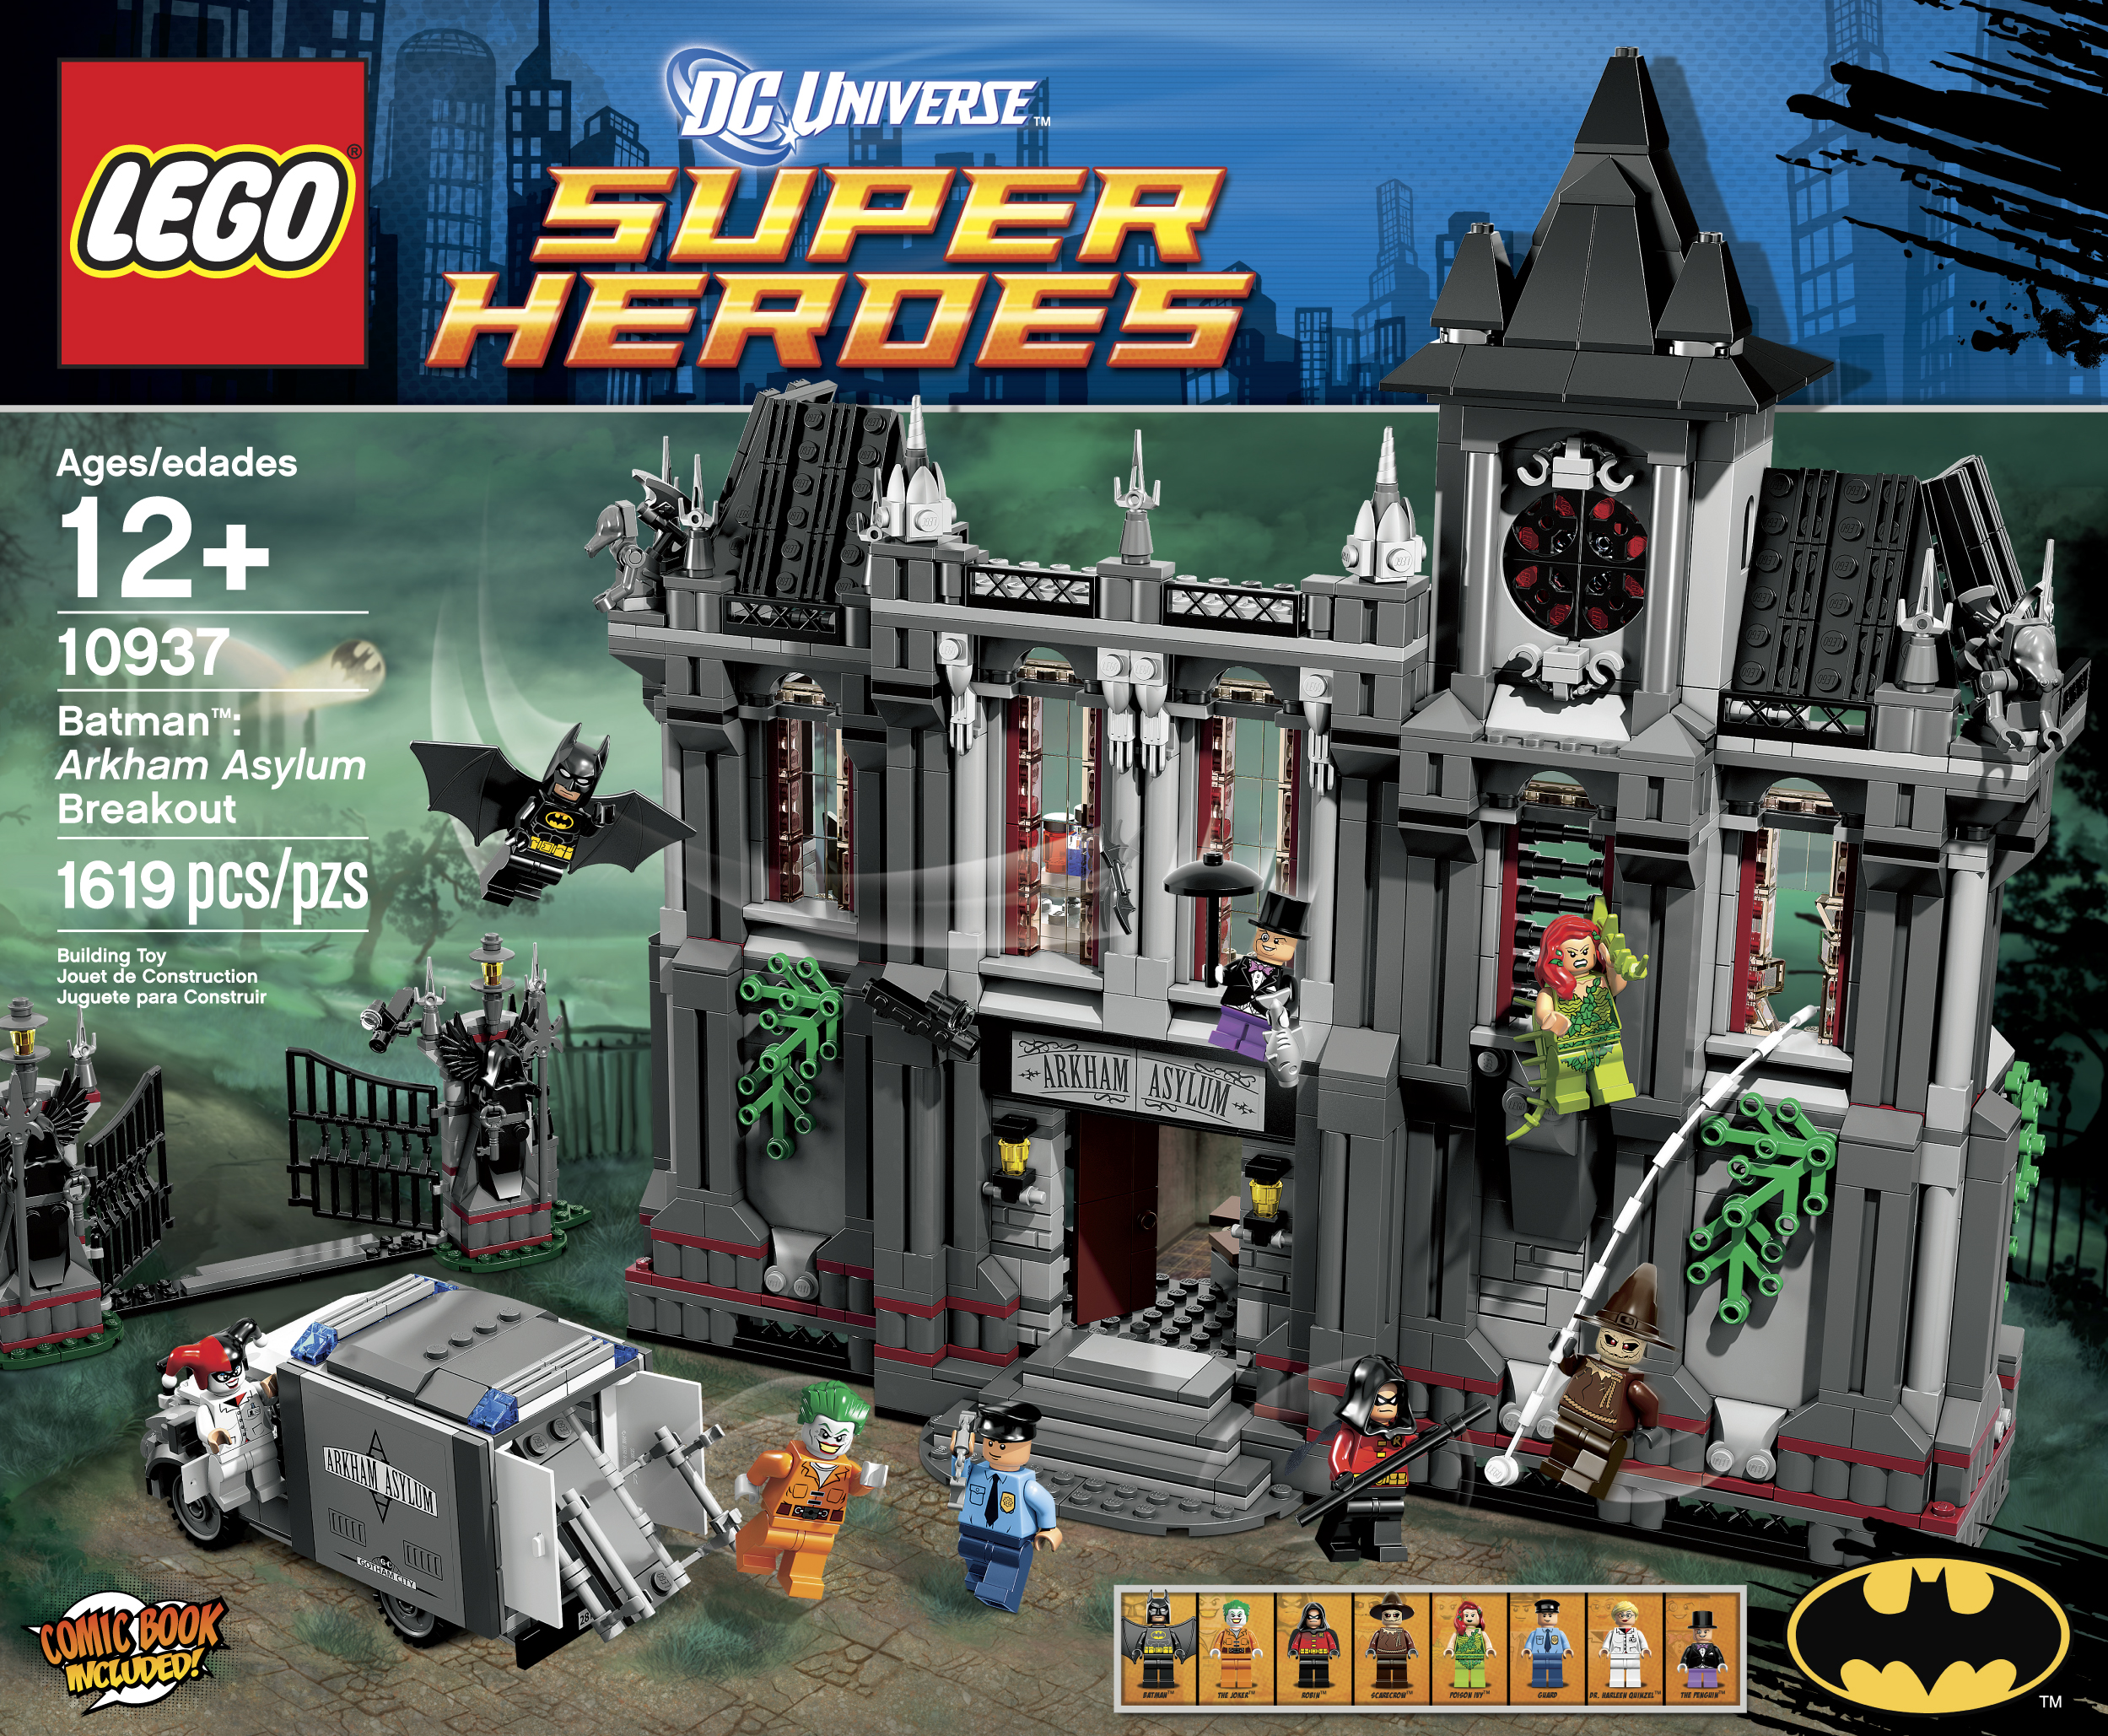 All Lego Batman 2 Sets